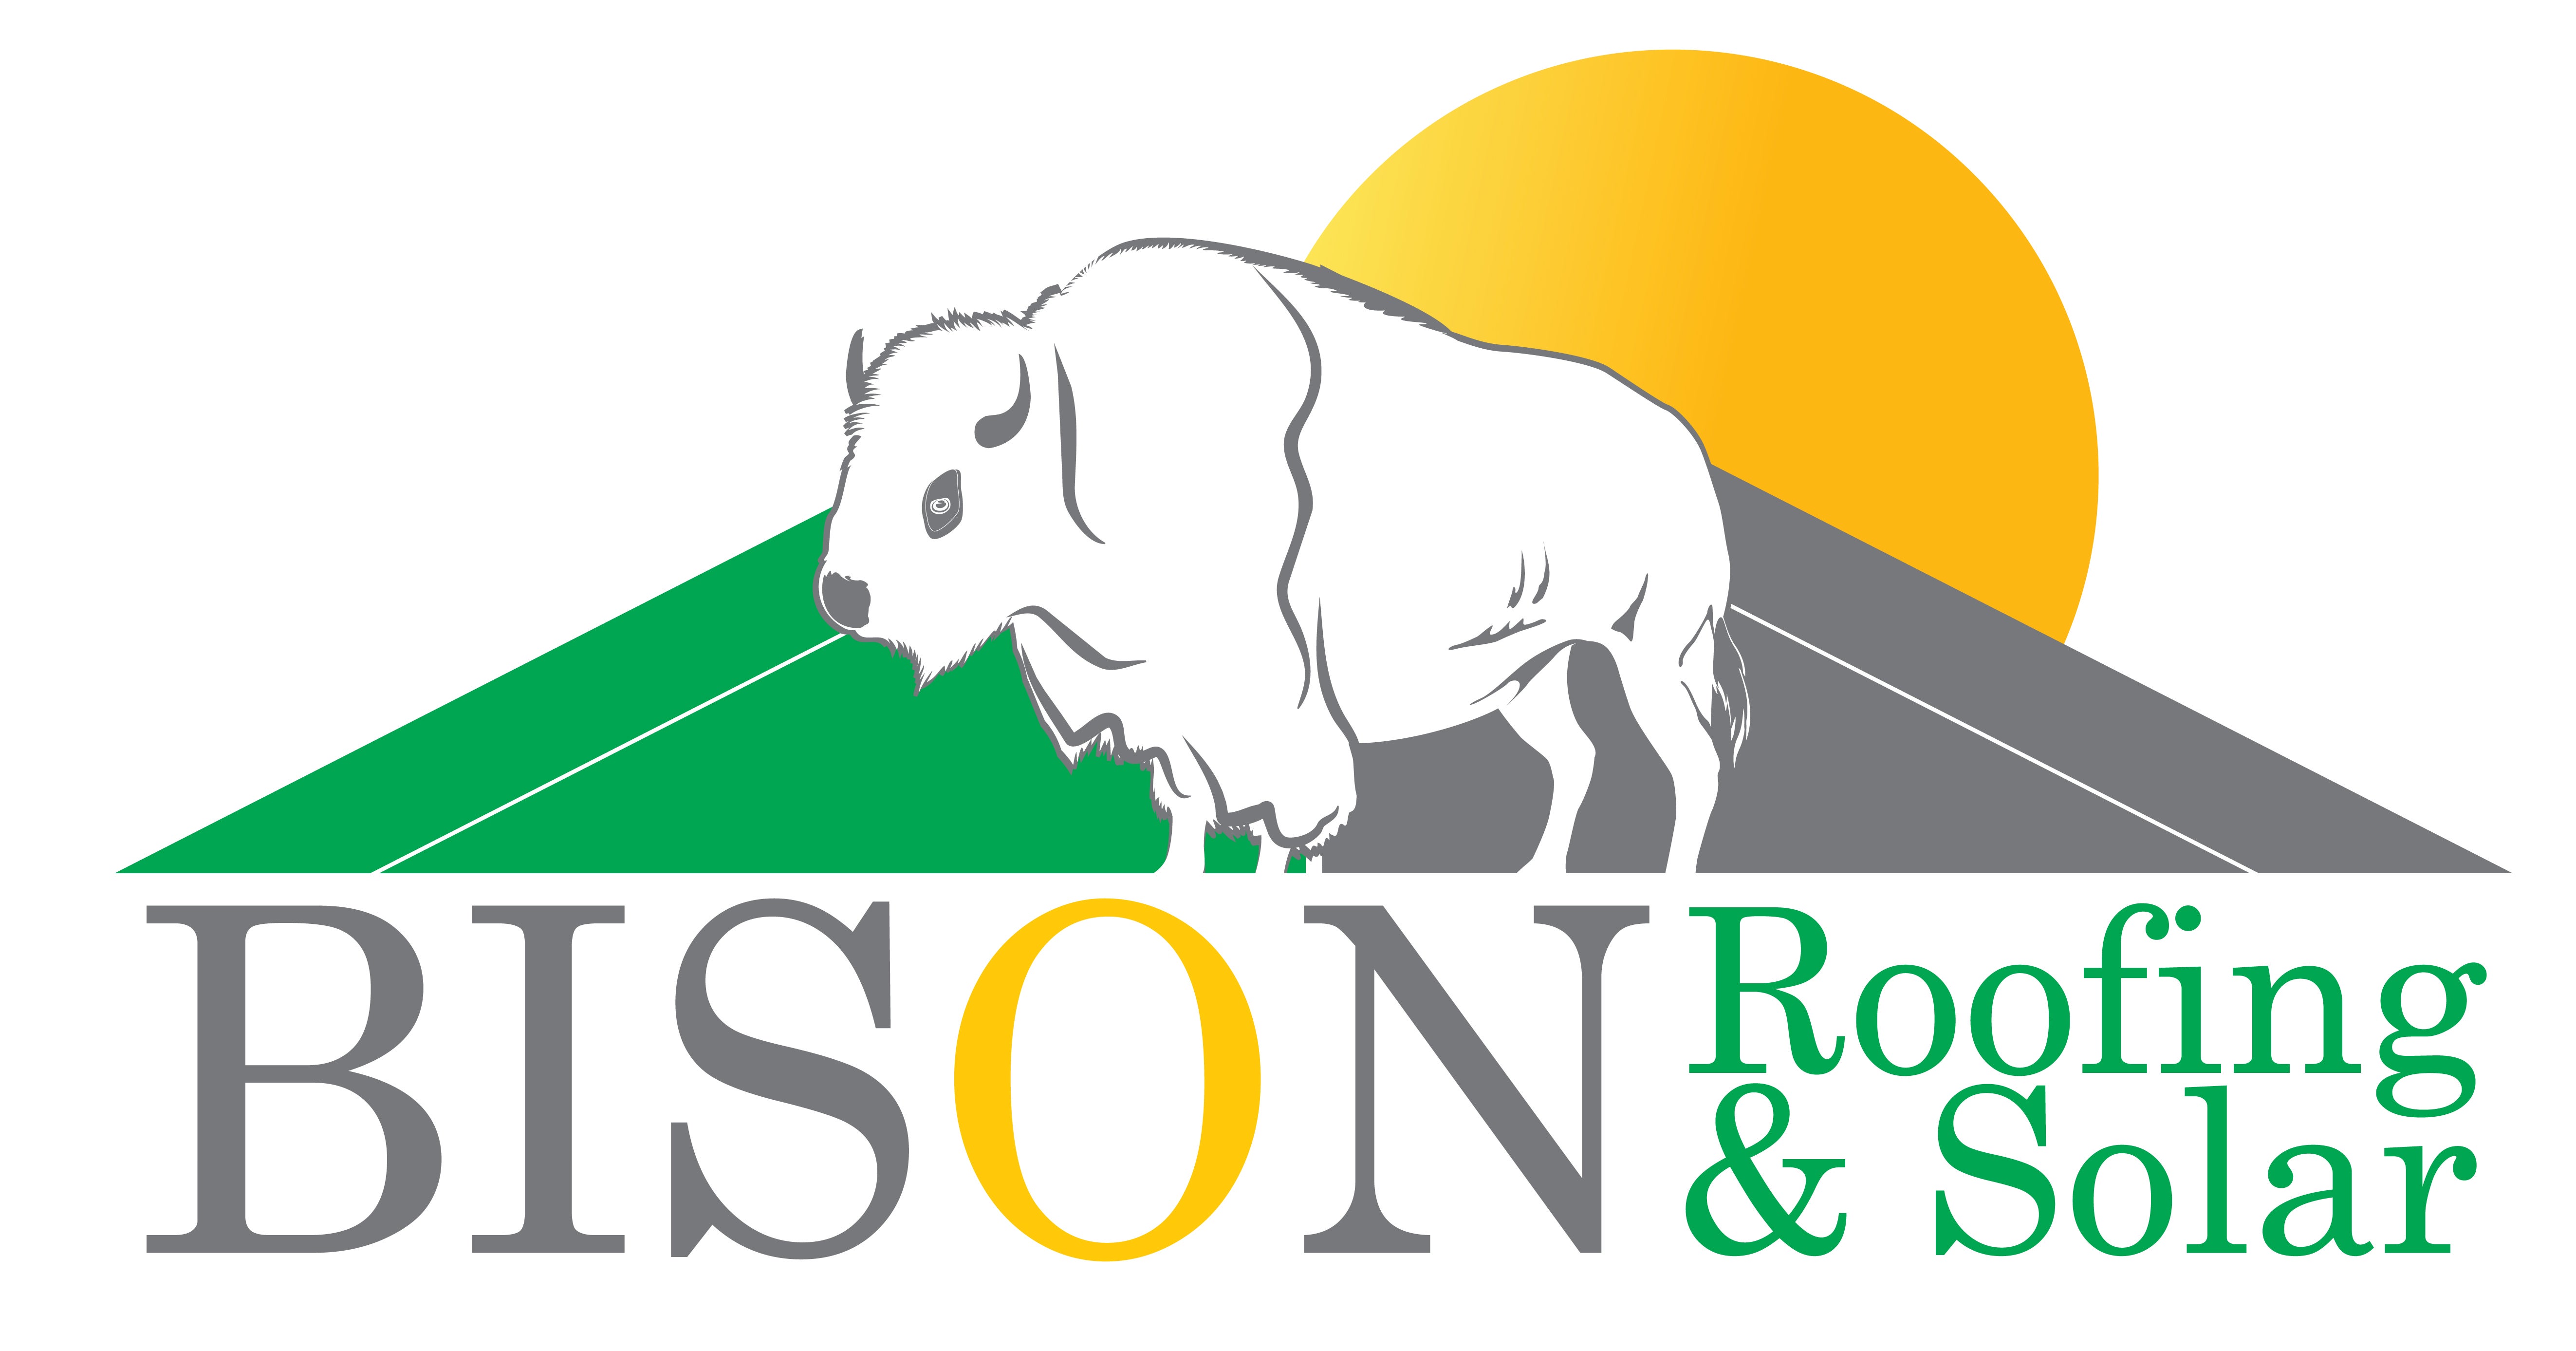 Bison Roofing & Solar, LLC